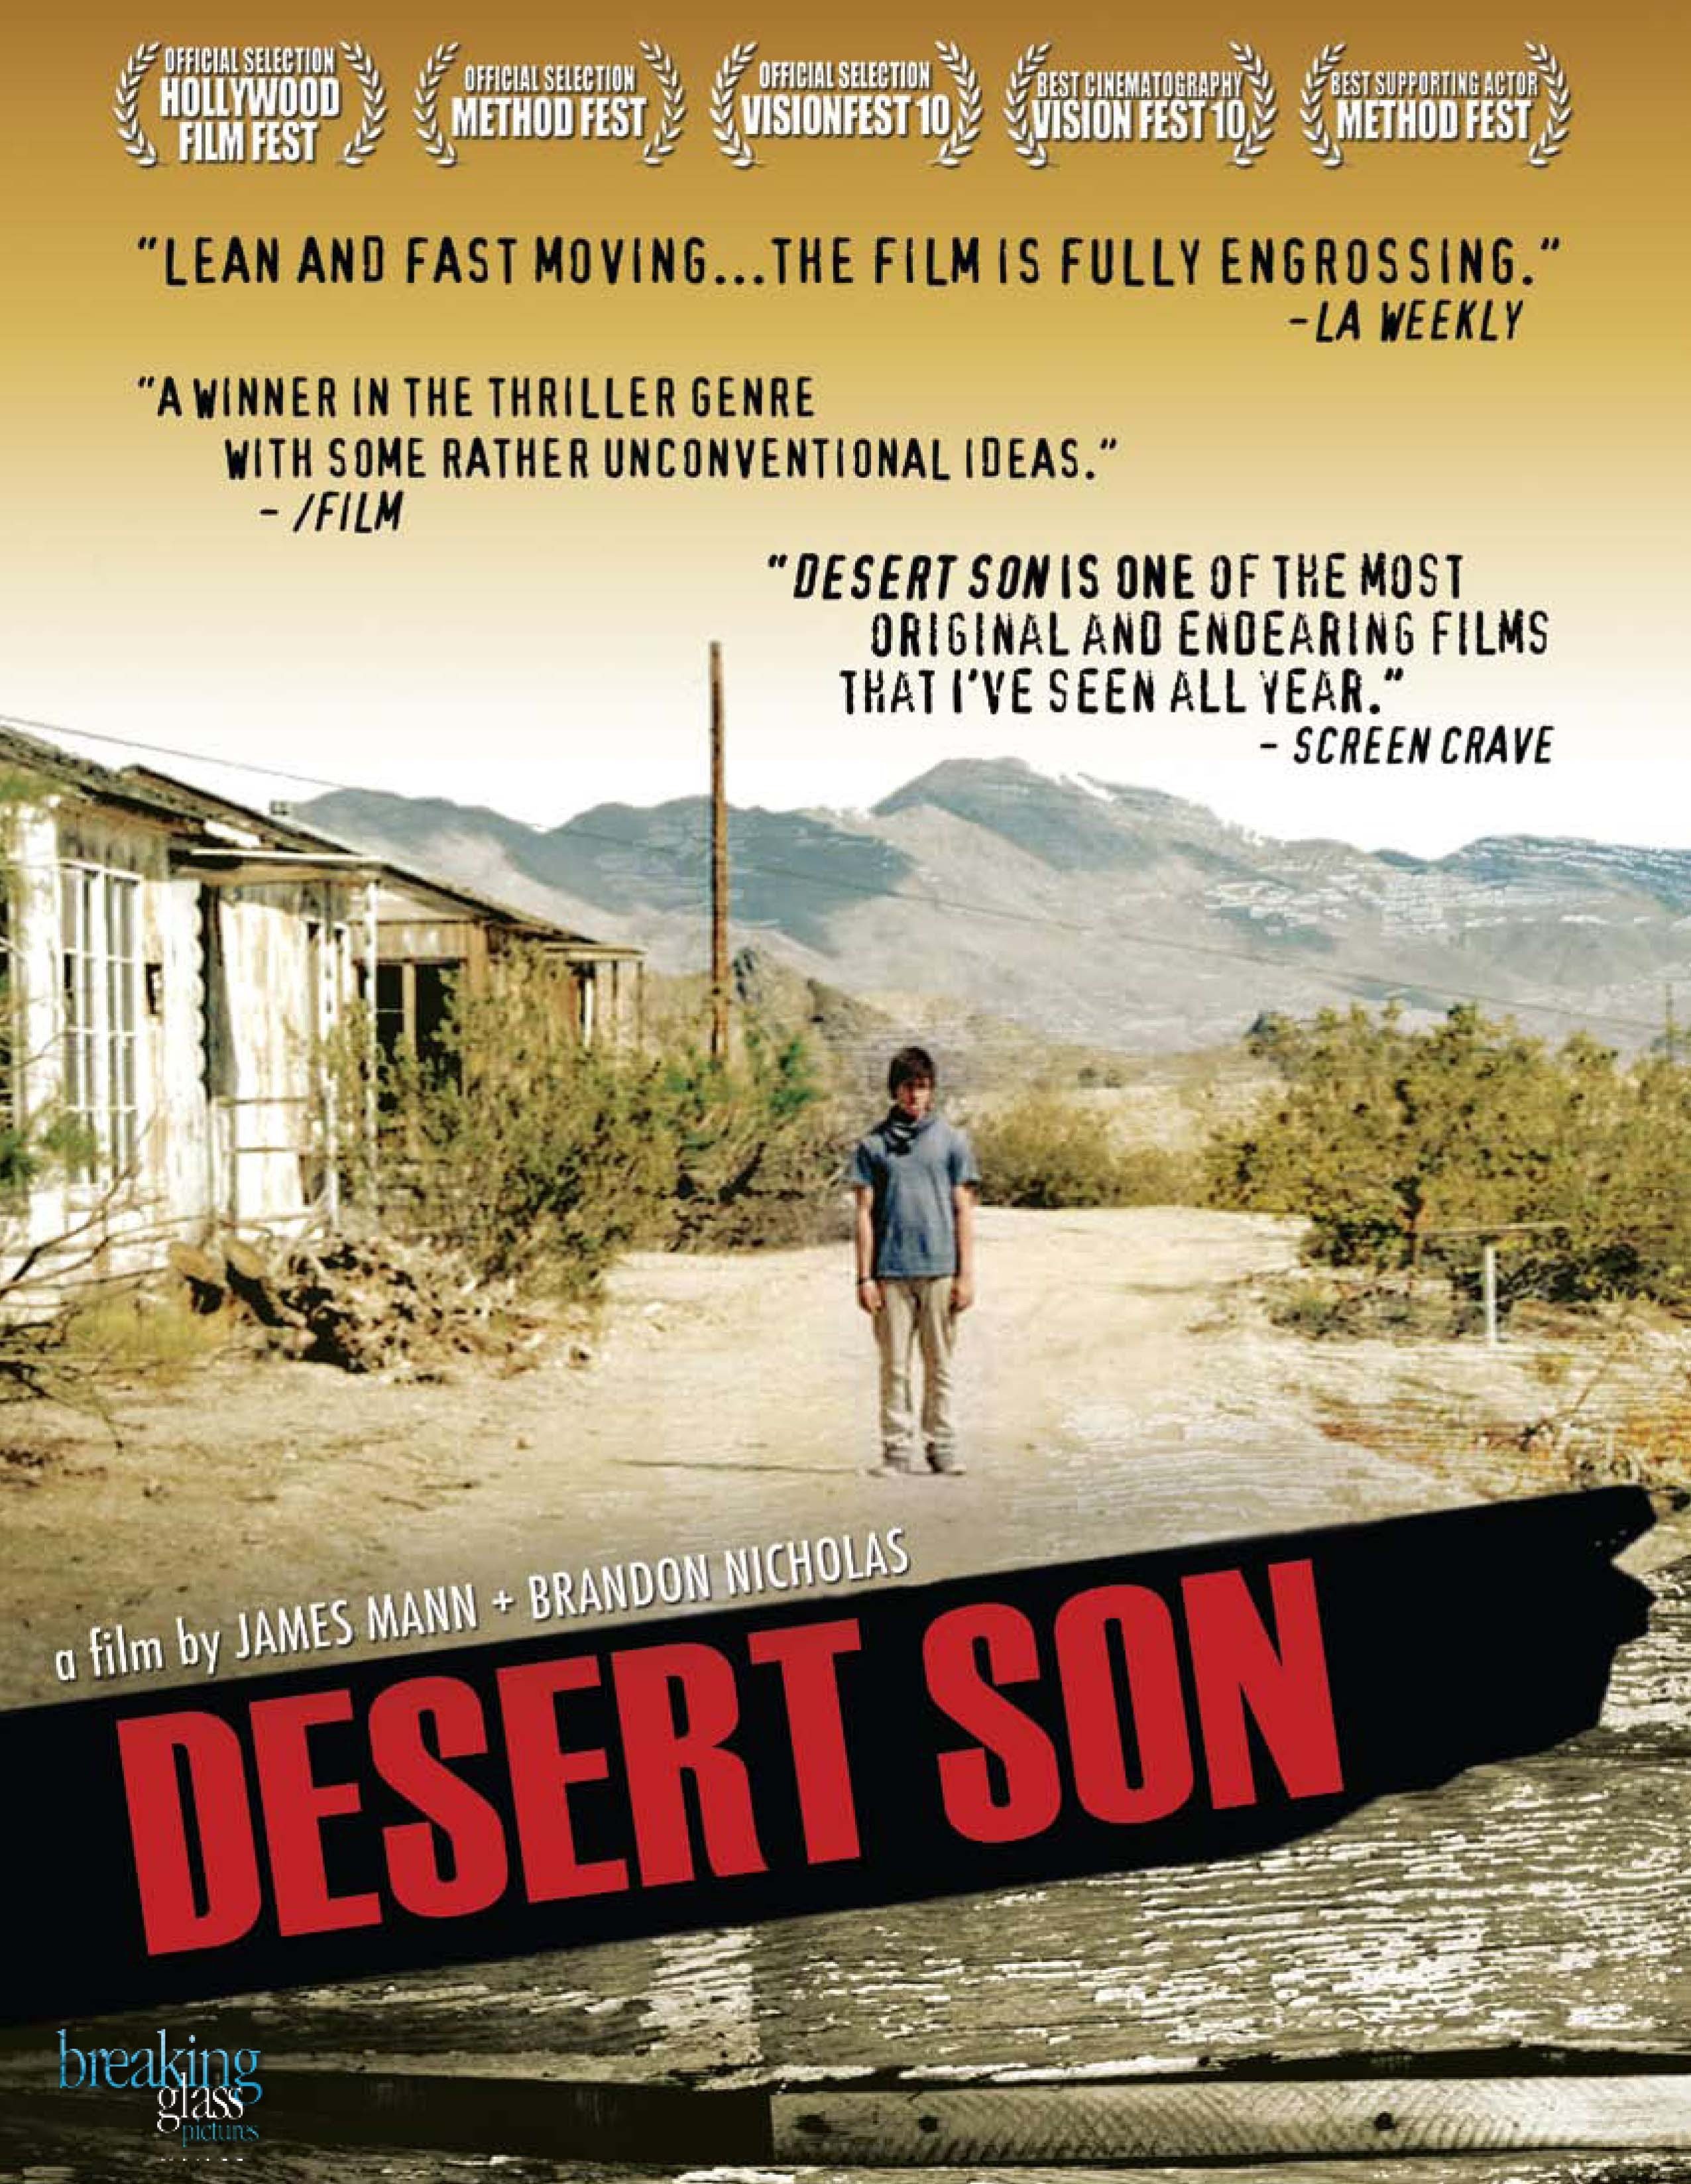 Desert Son (2010) Screenshot 1